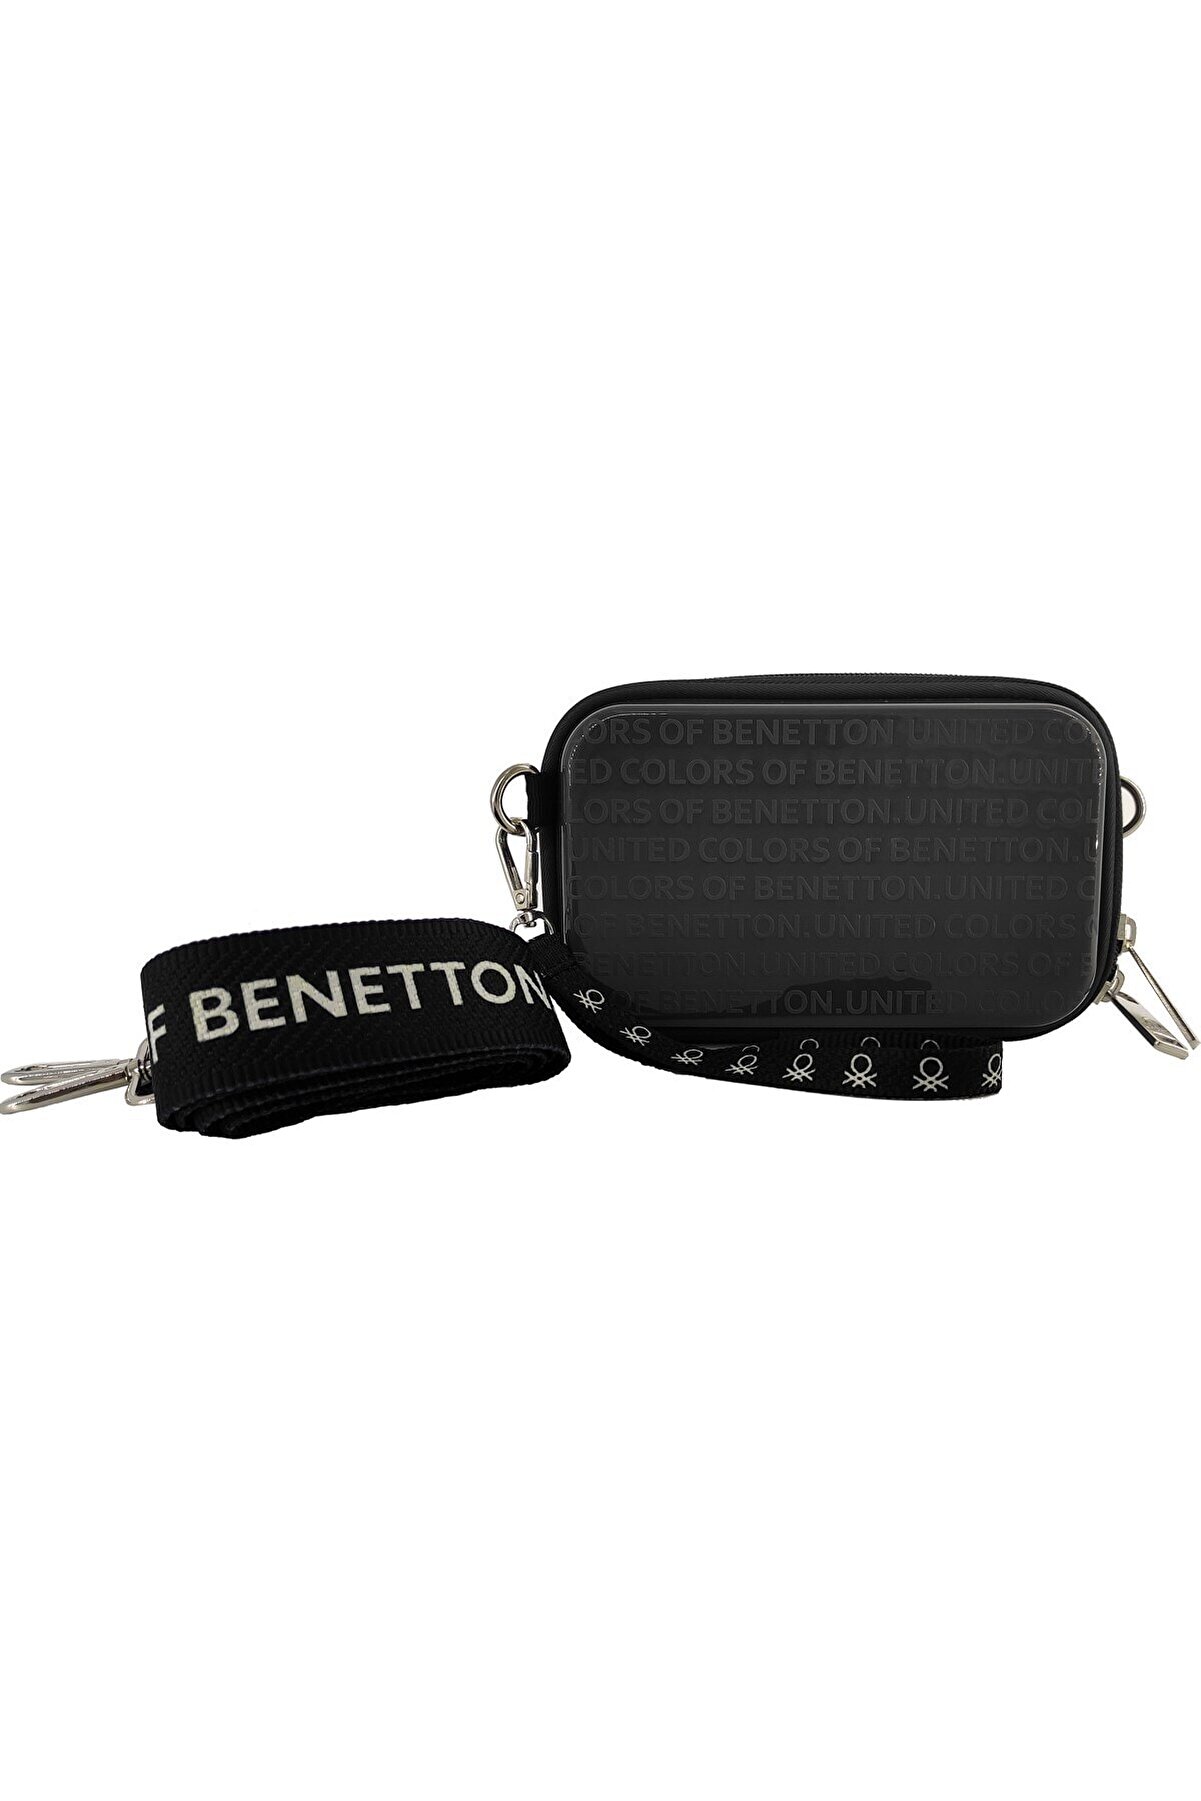 Benetton Siyah El Çantası Bntm101-00 D.grey